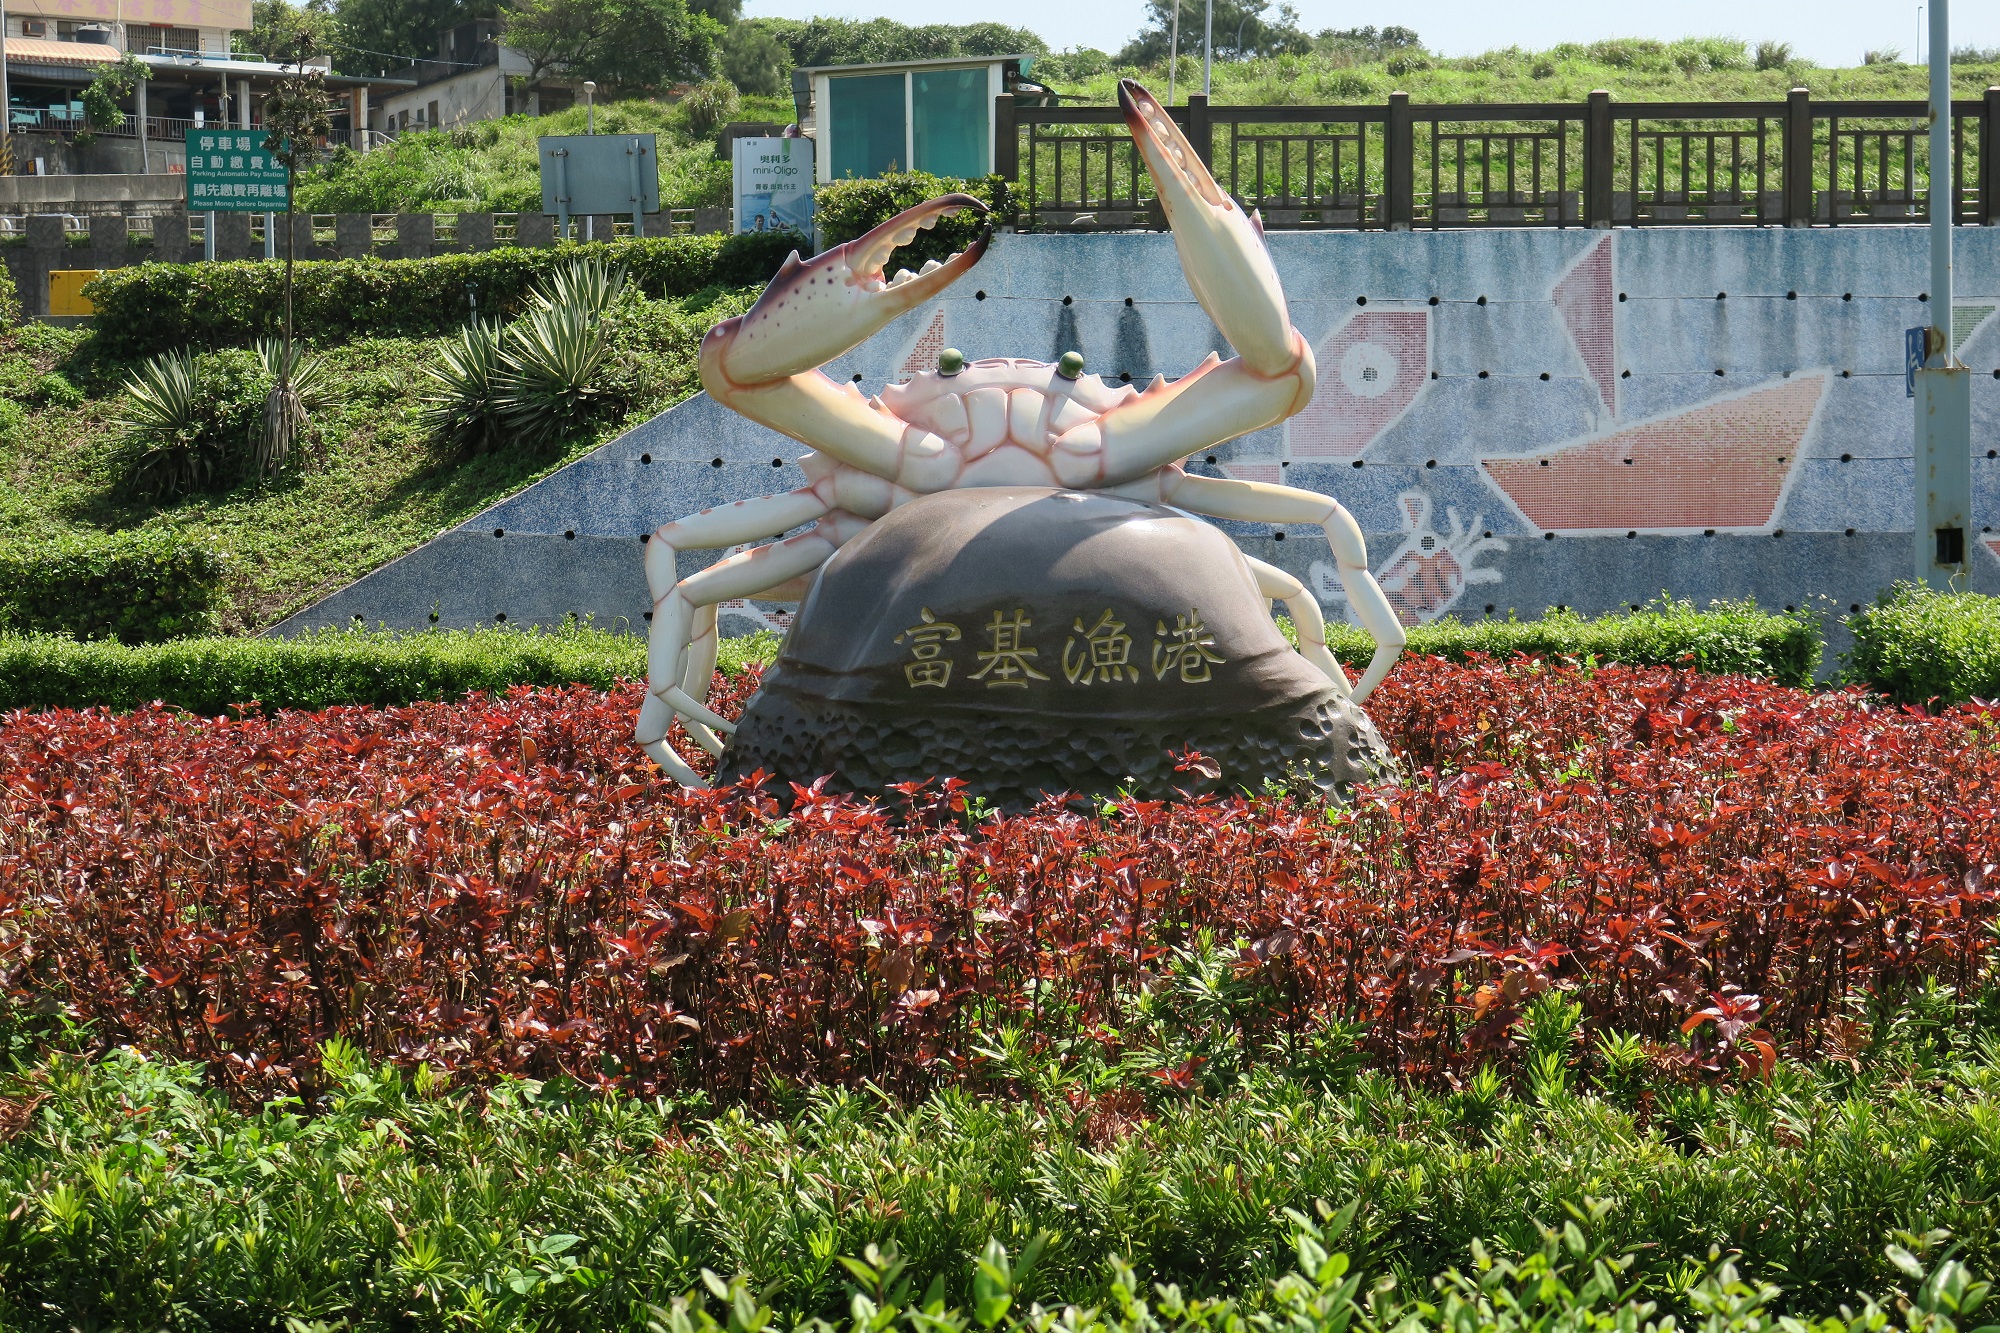 富基漁港花圃的花蟹雕塑說明了這裡也是萬里蟹的大本營